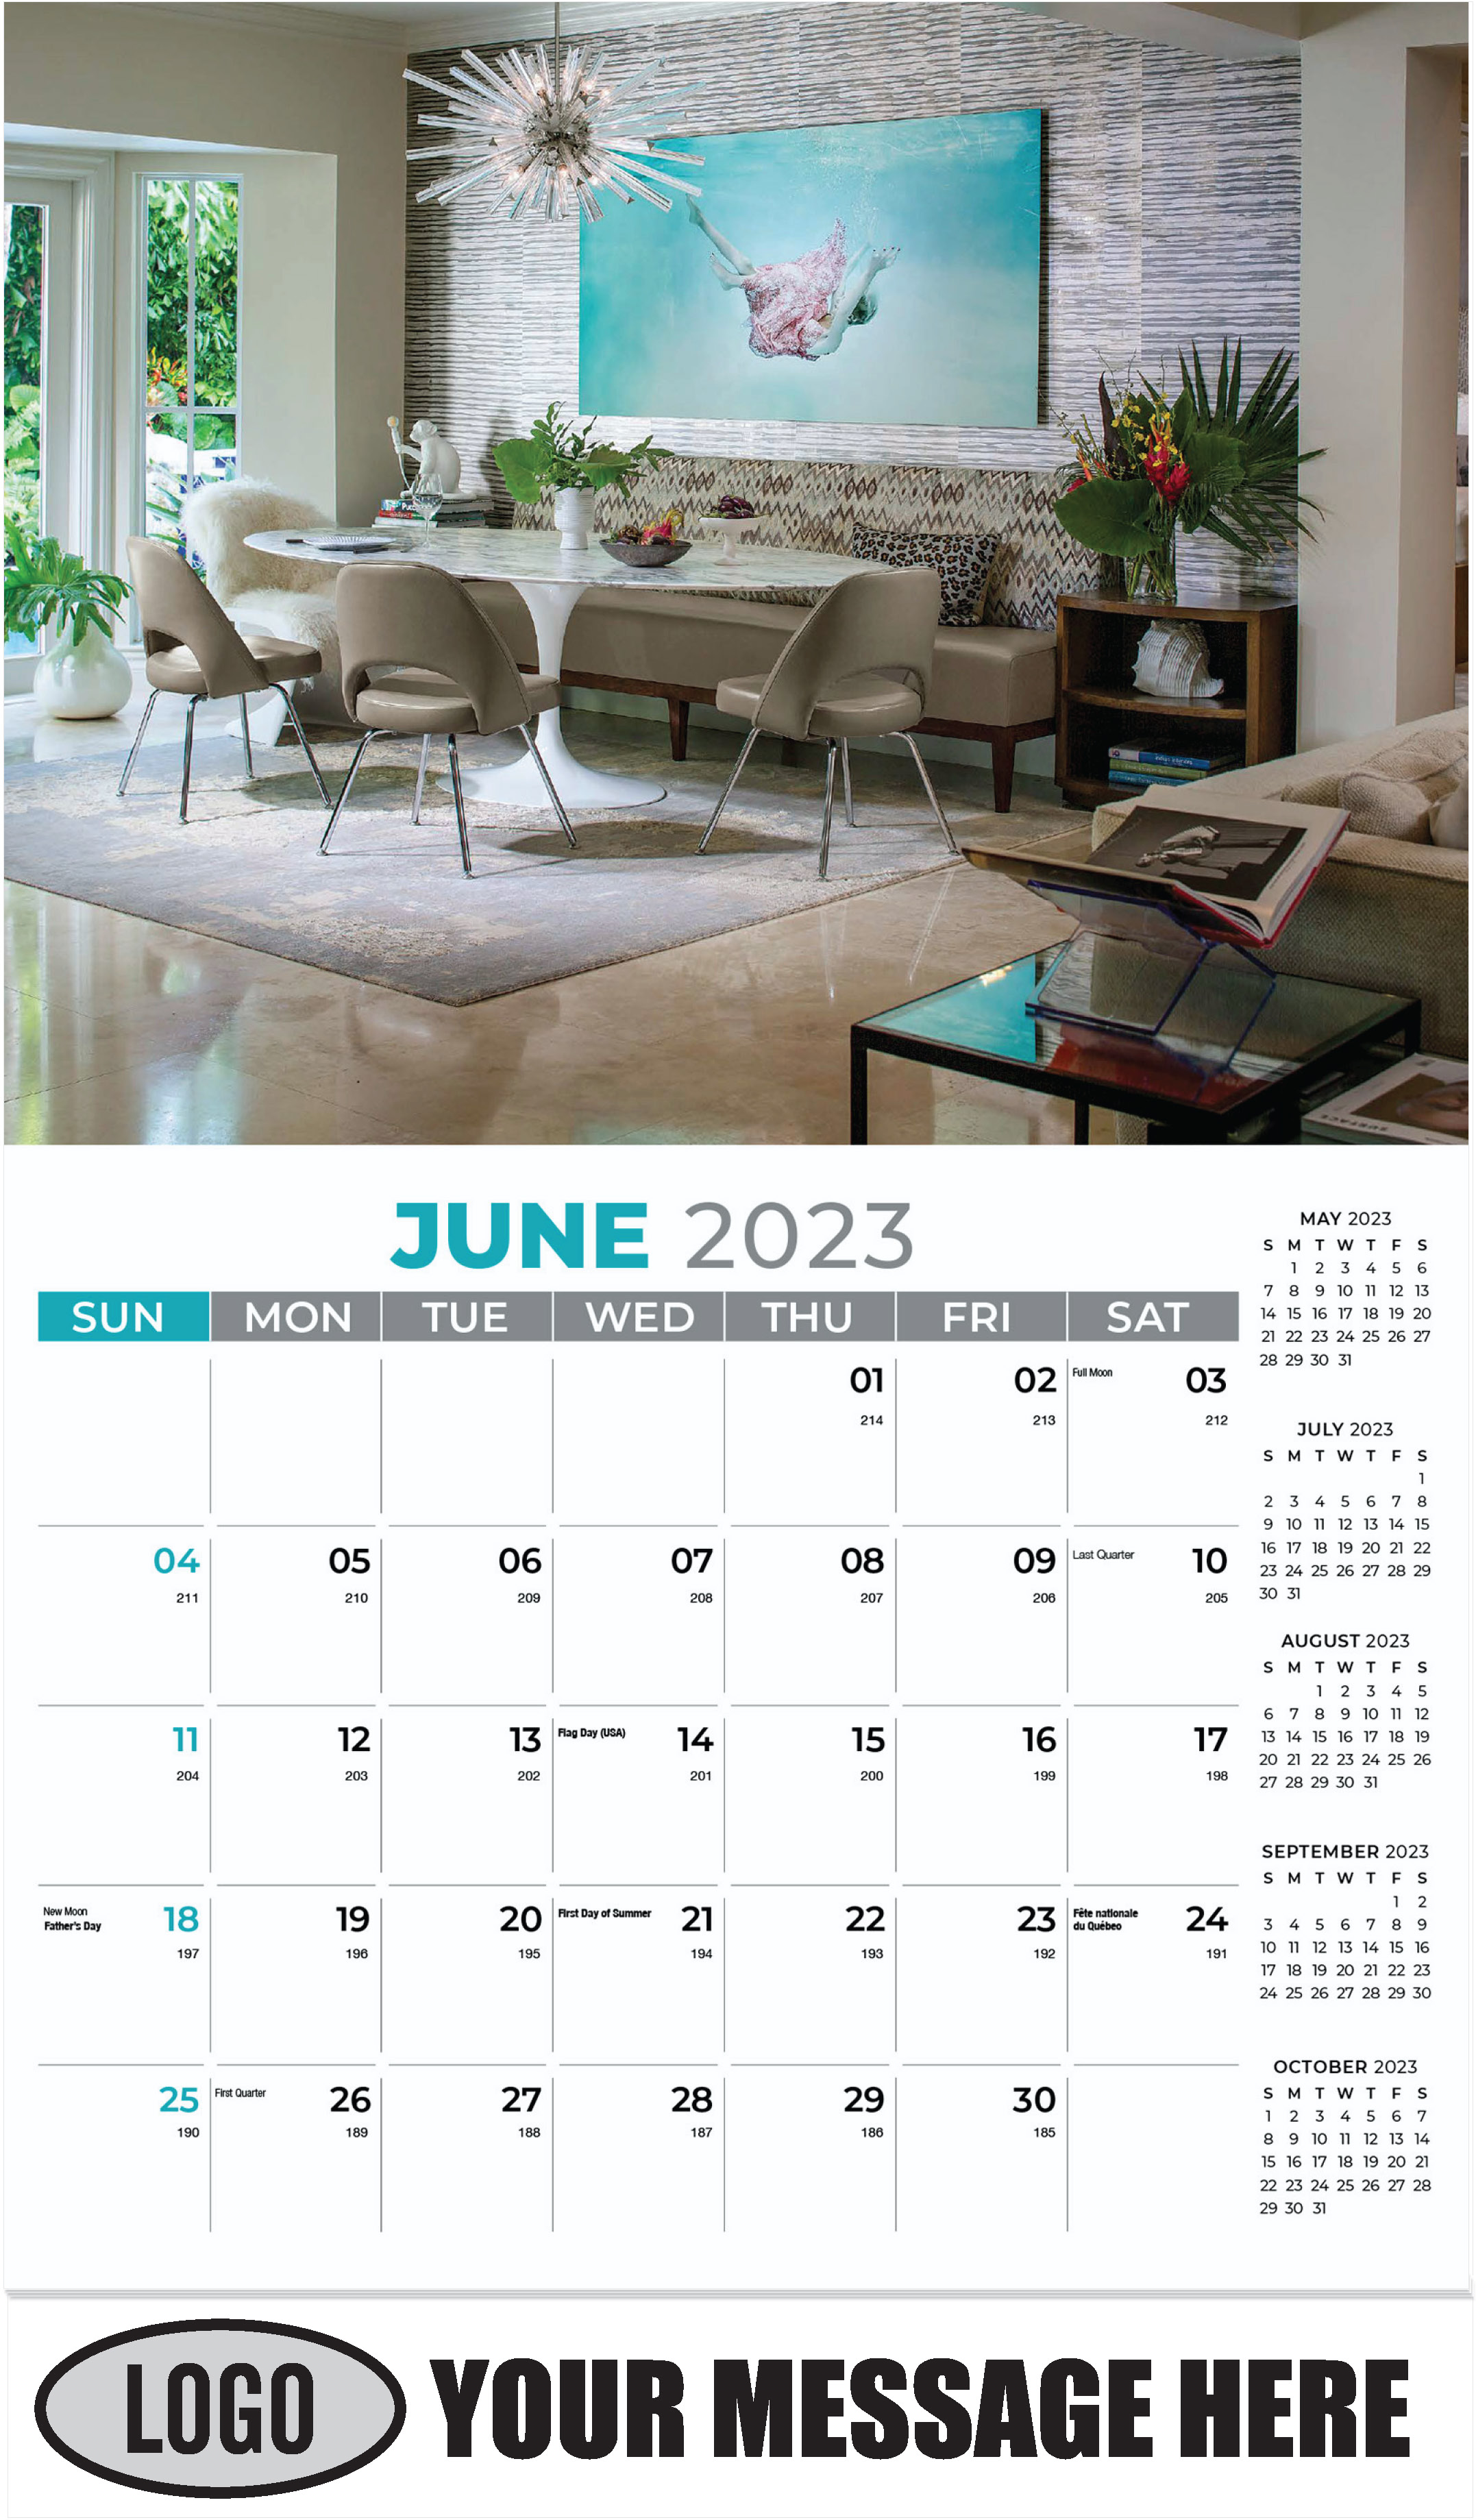 June - Décor & Design 2023 Promotional Calendar